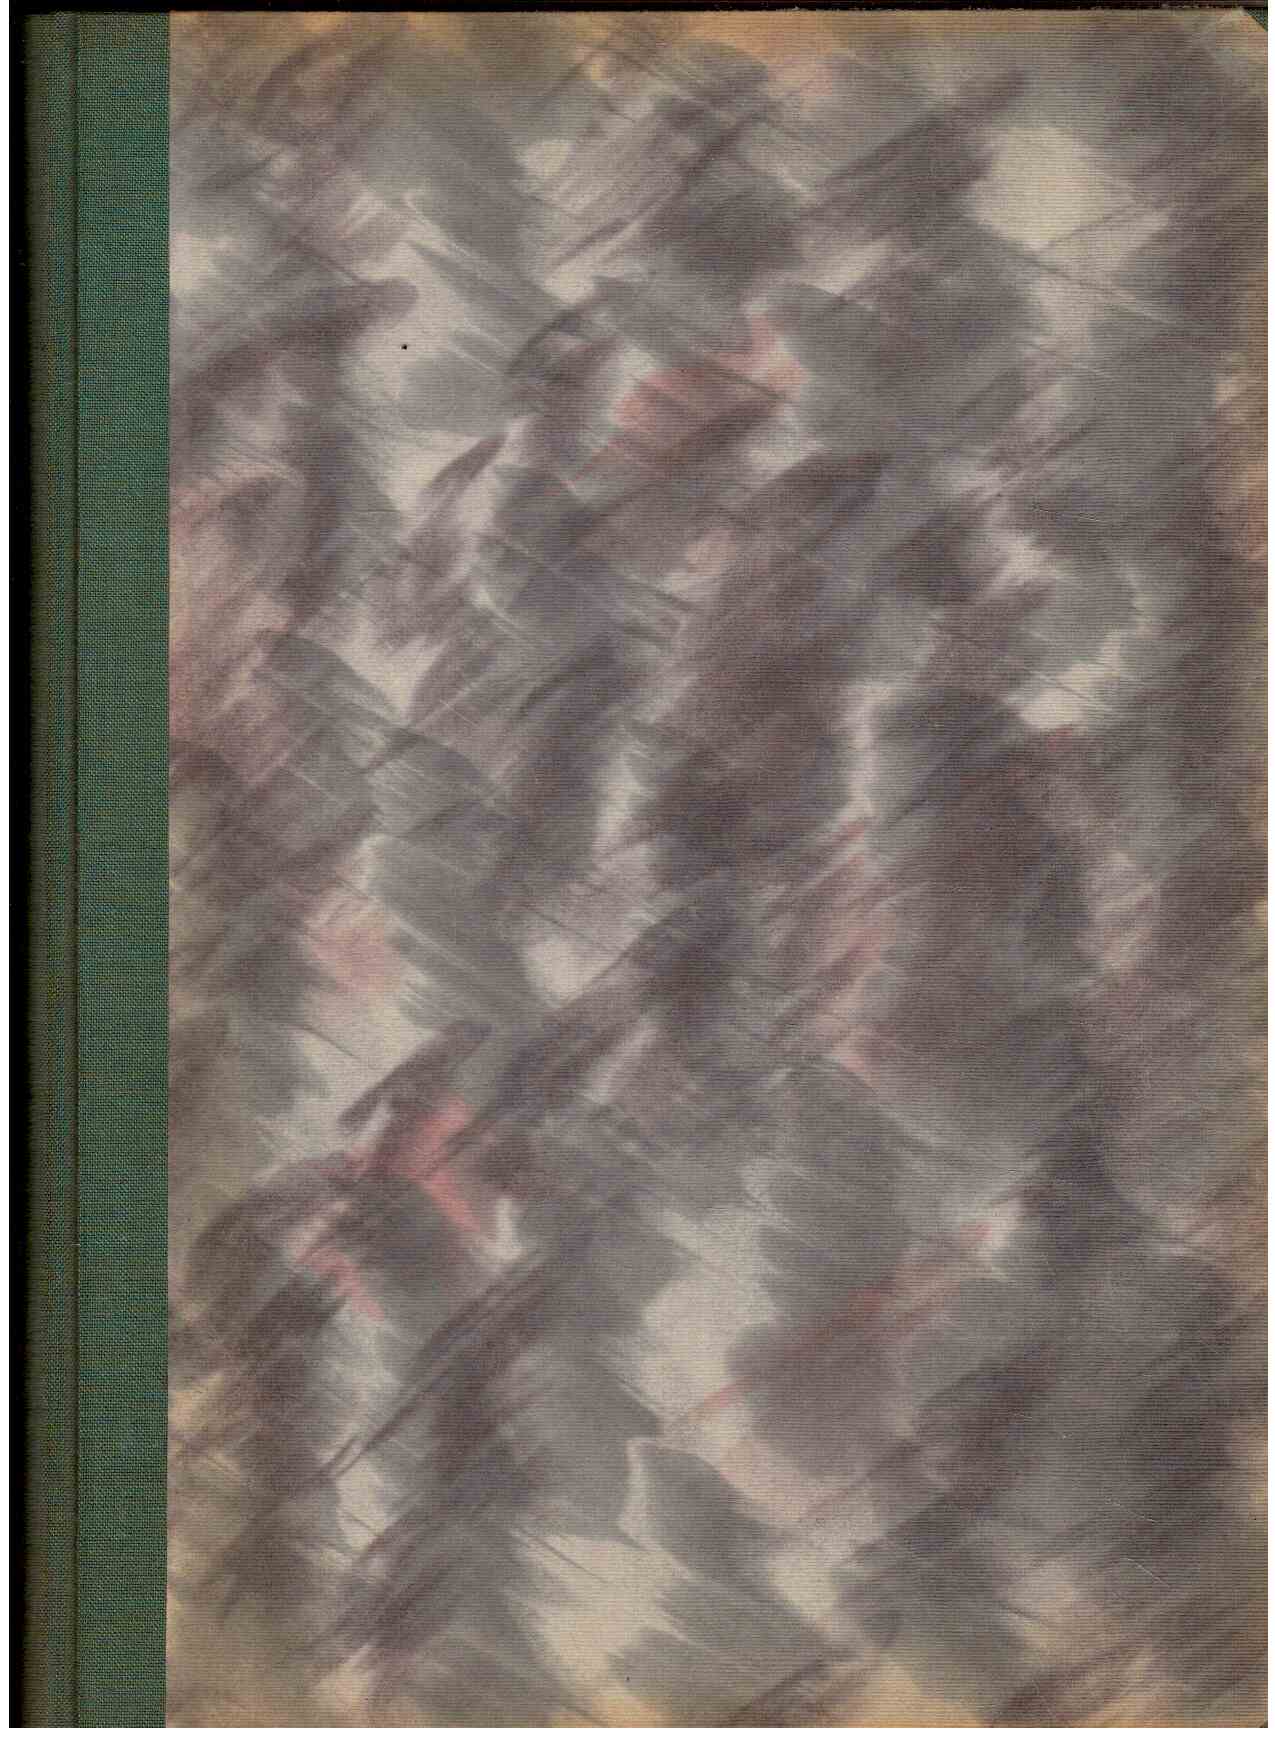 Der Wald : Publikationsorgan der VdgB und der Gewerkschaft Land und Forst, Heft 1-12 (1951)